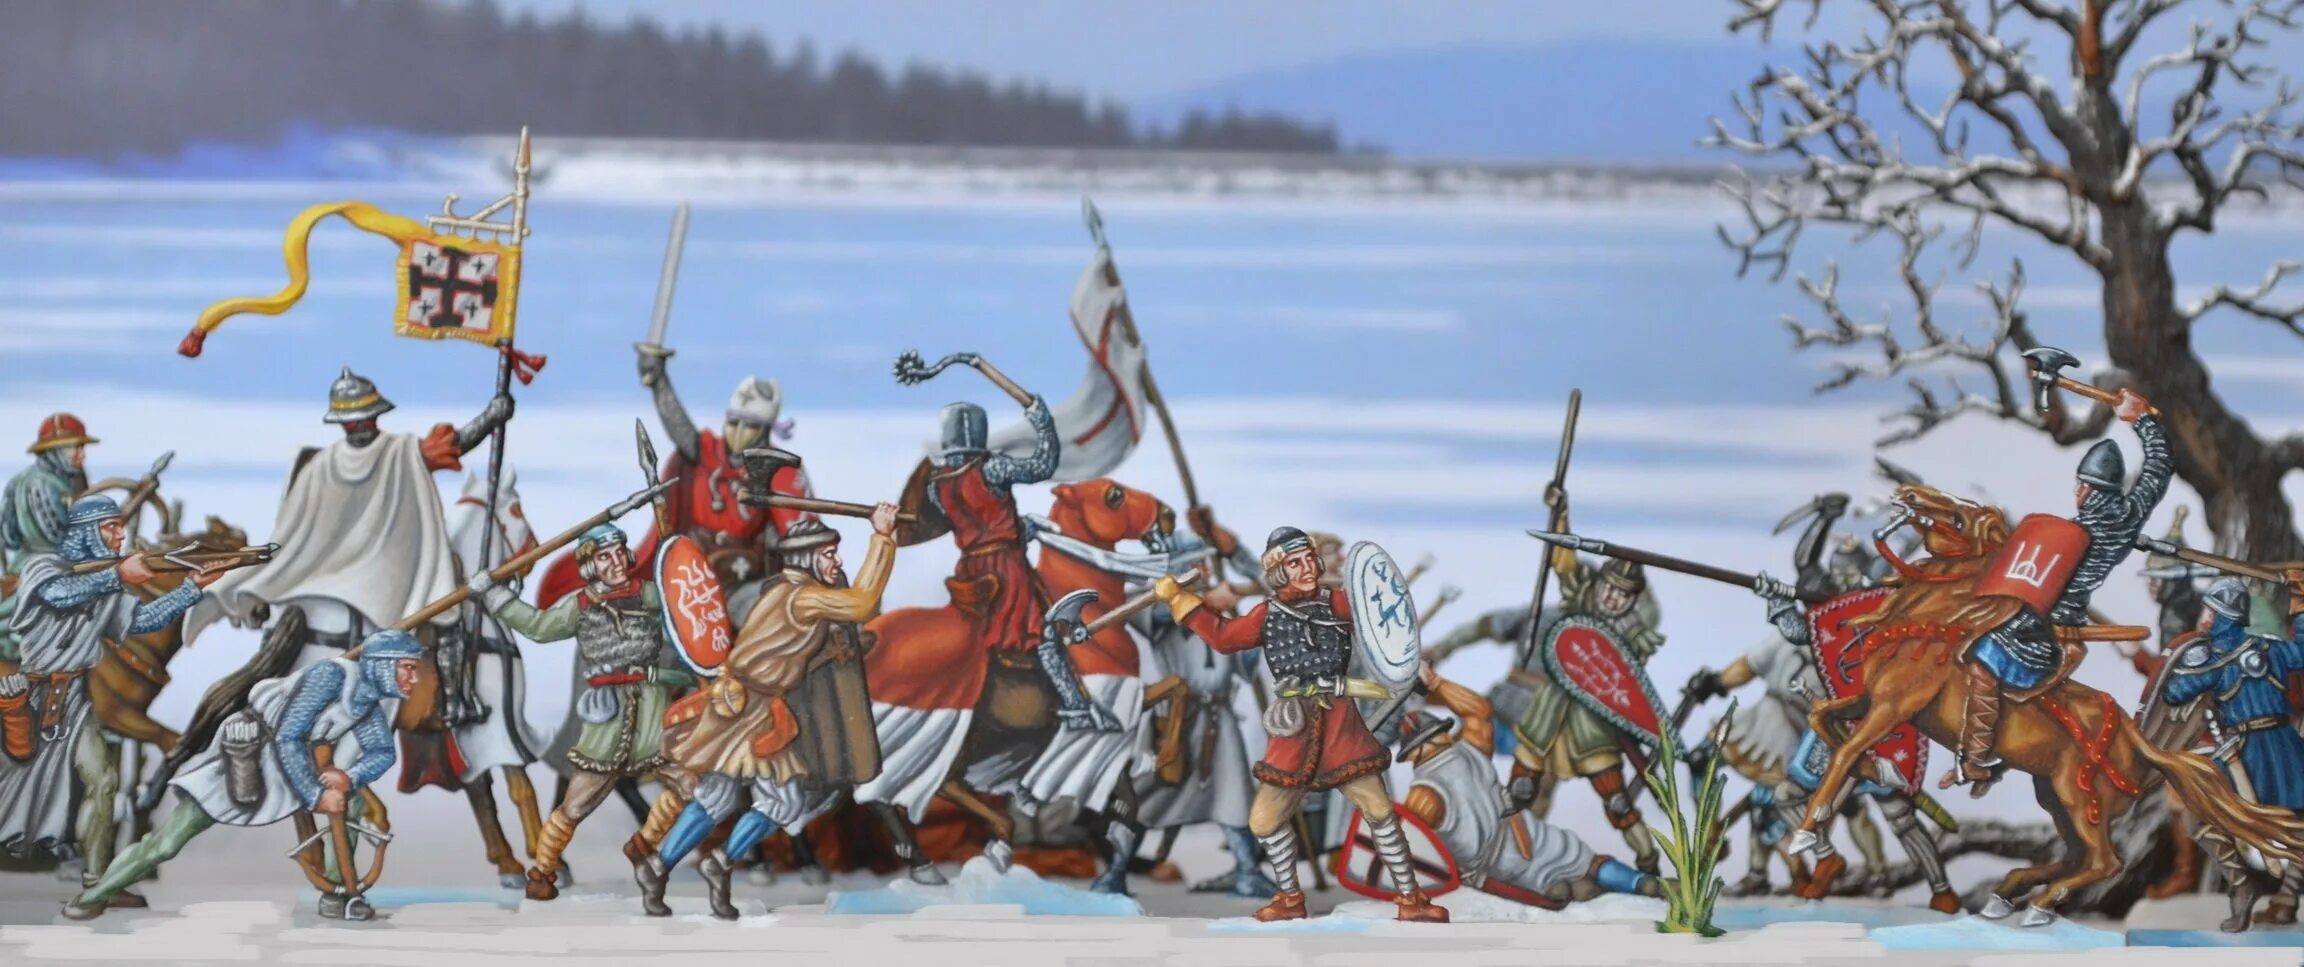 Рыцари крестоносцы вторглись в русские земли. Битва Ледовое побоище 1242. Чудское озеро Ледовое побоище.